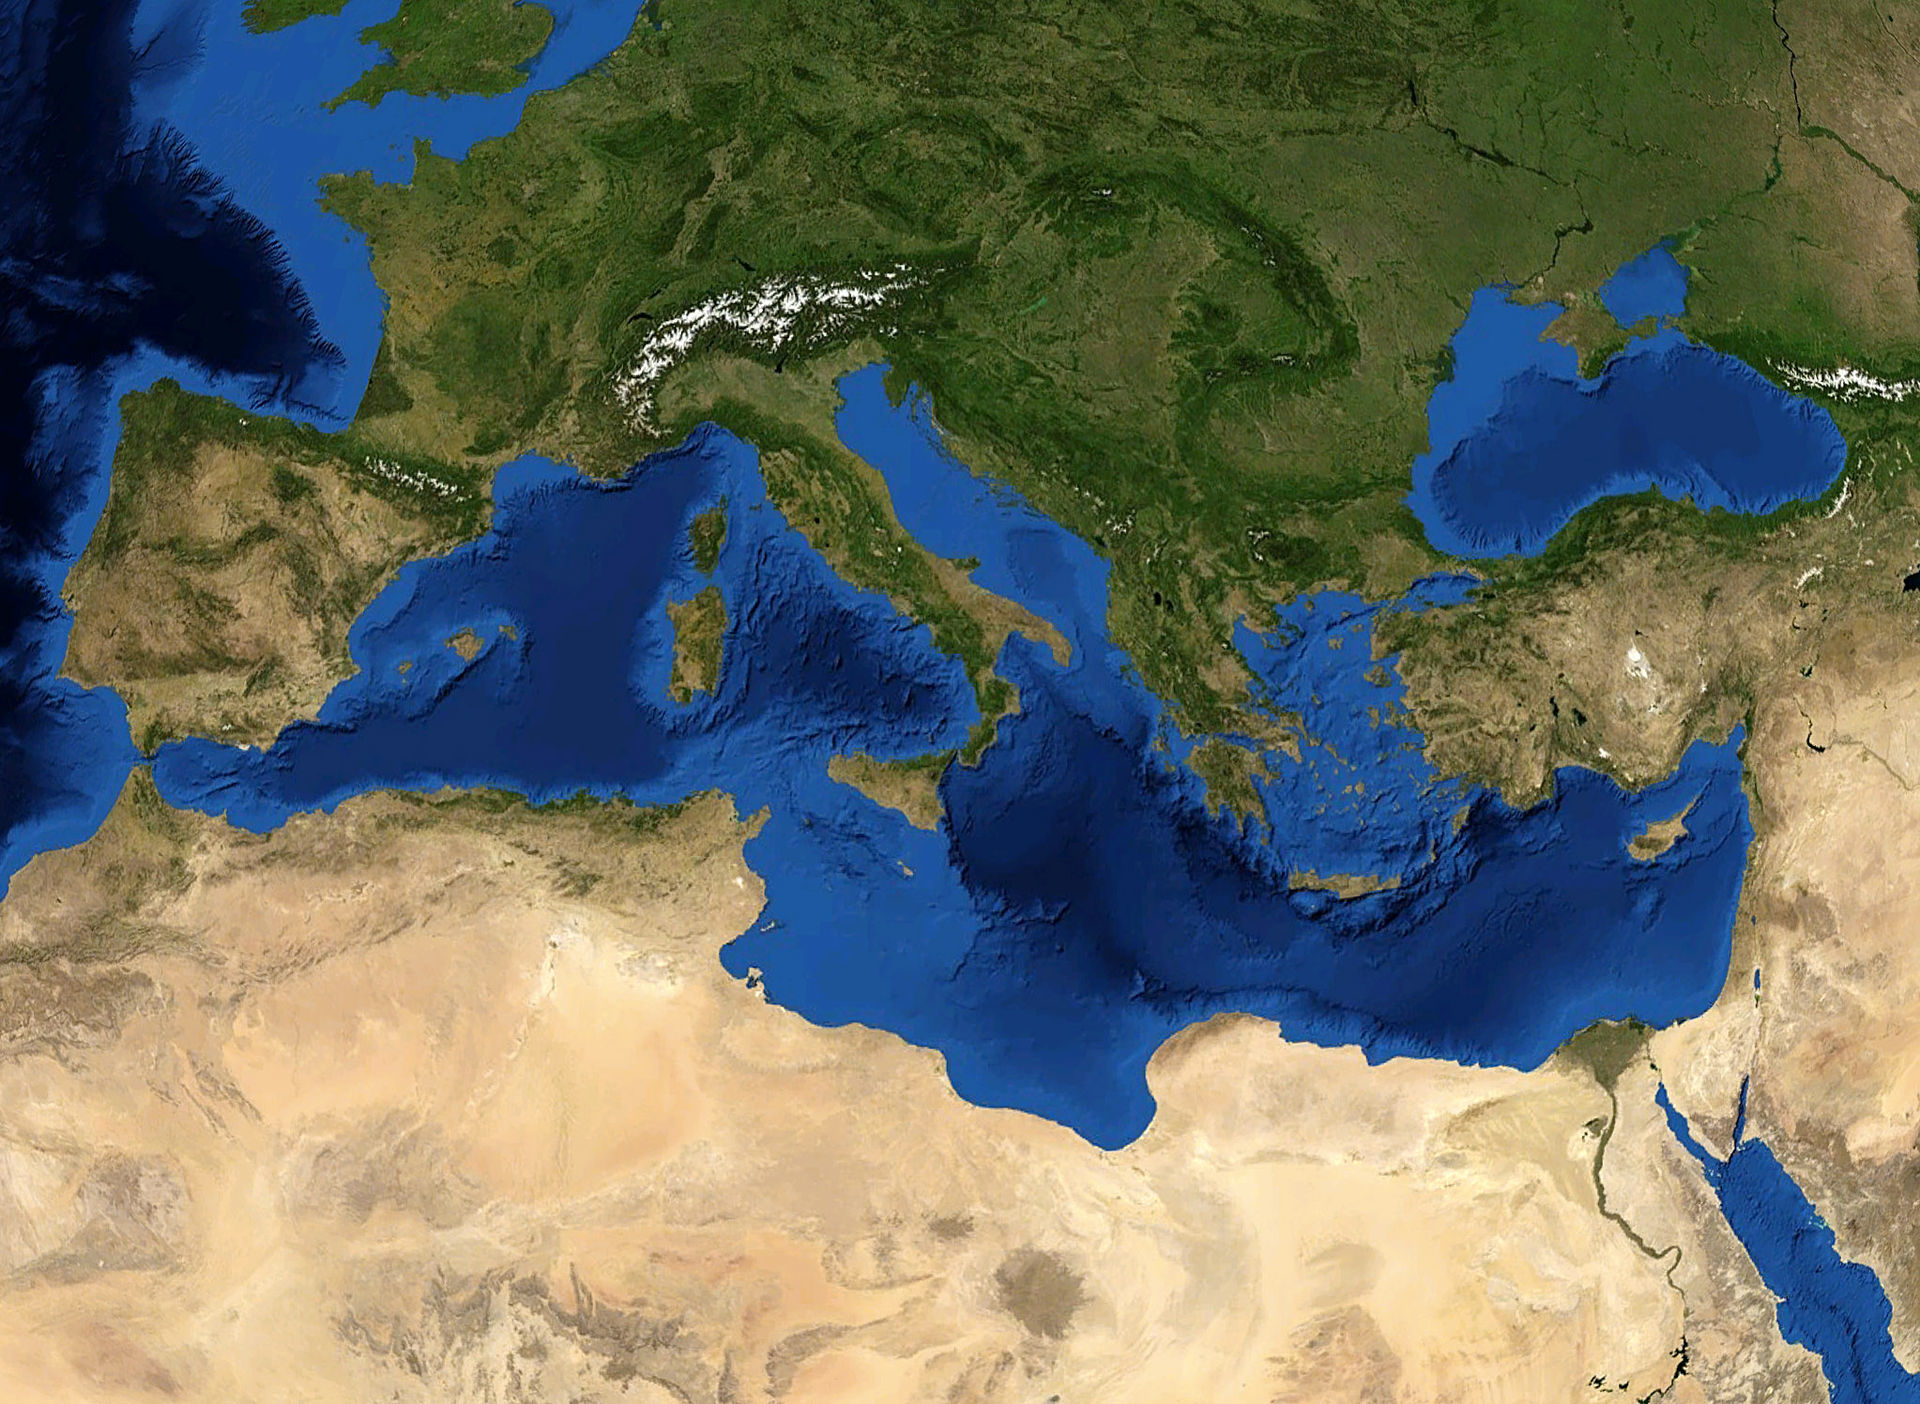 Η περιοχή της Μεσογείου είναι μια περιοχή μετάβασης του κλίματος, που σχετίζεται στενά με την παγκόσμια κλιματική μεταβλητότητα με διαδικασίες έντονης κλιμακωτής αλληλεπίδρασης.